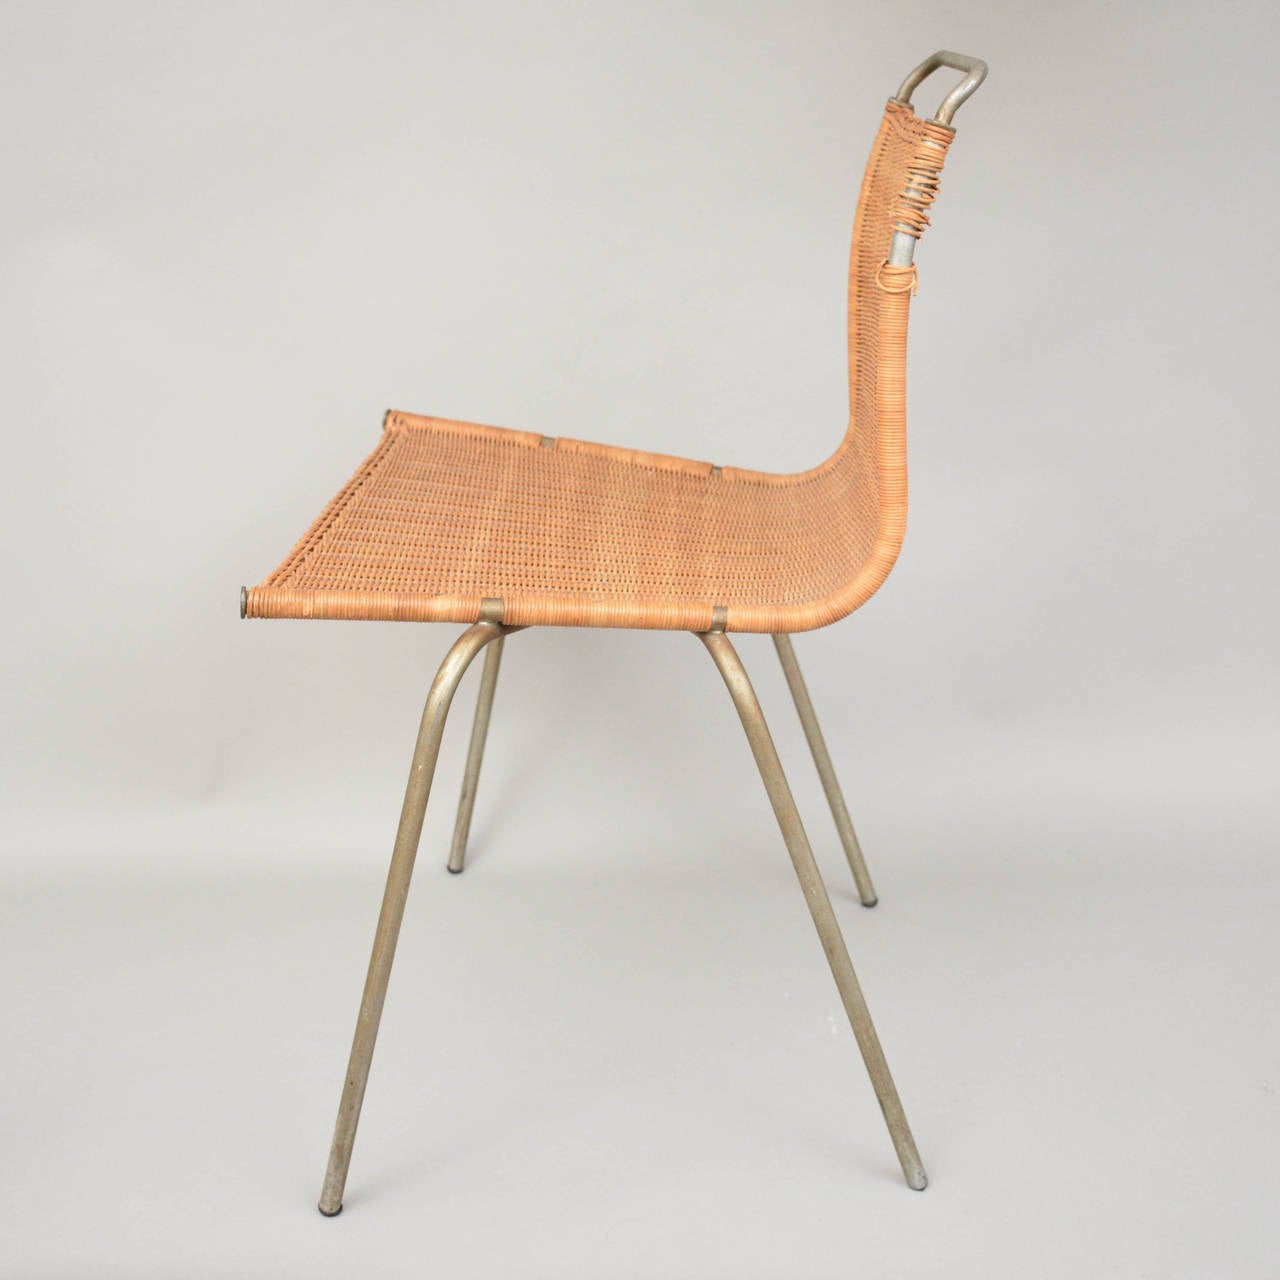 A rare original PK1 chair by Poul Christensen for E Kold Christensen, Denmark. Matt chrome-plated steel frame, woven cane seat and back. Designed in 1956.